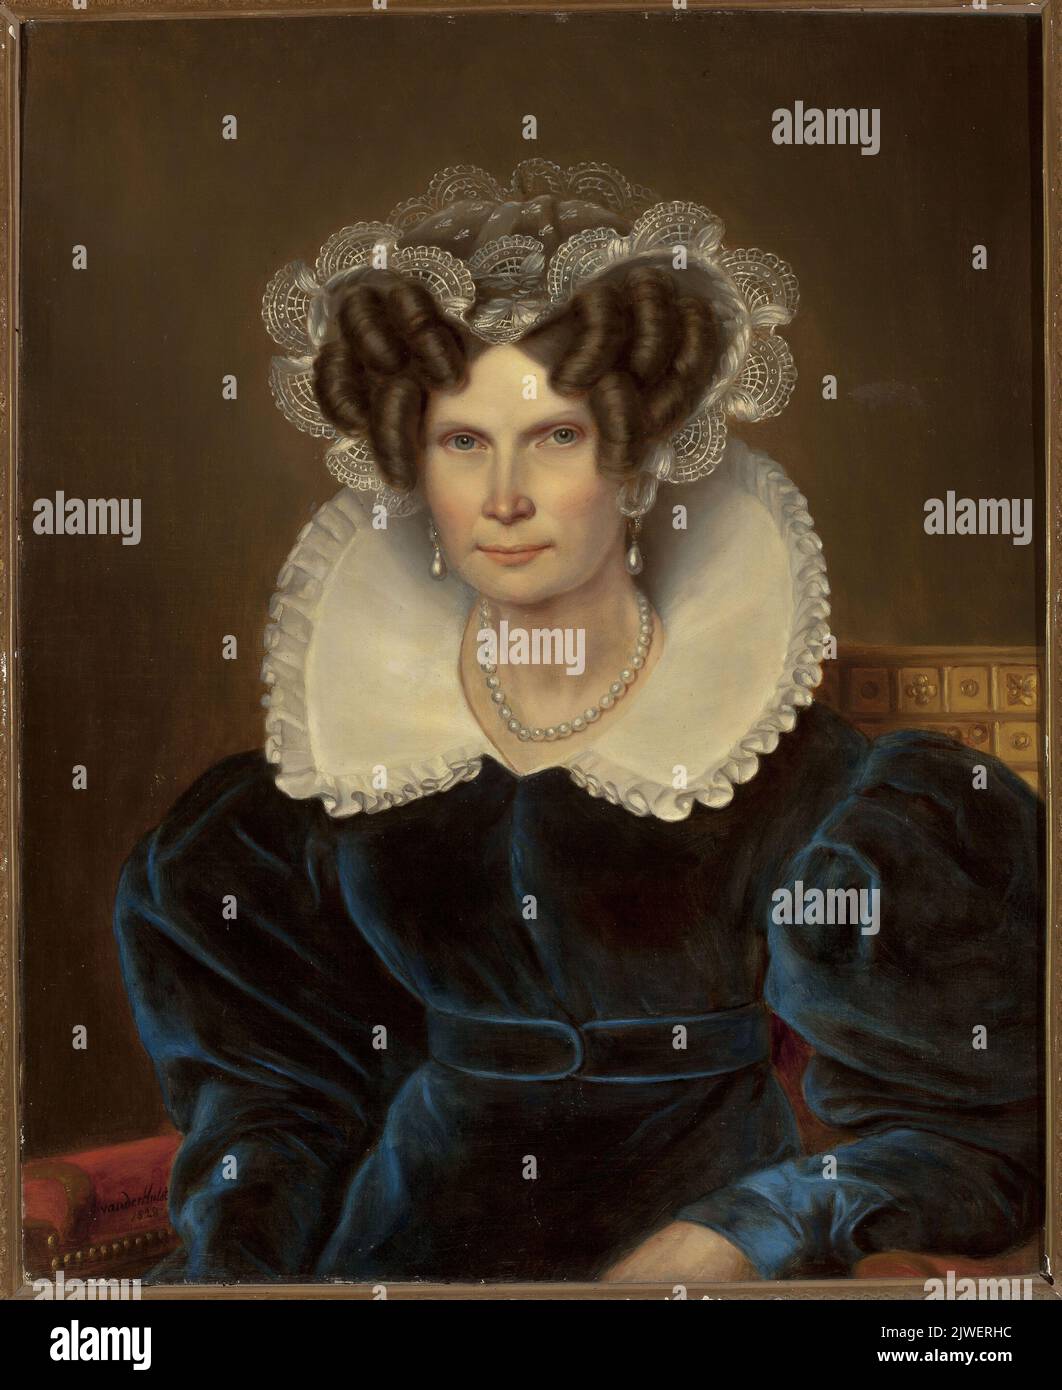 Portrait de Wilhelmine, reine des pays-Bas. Hulst, Jan Baptist van der (1790-1862), peintre Banque D'Images